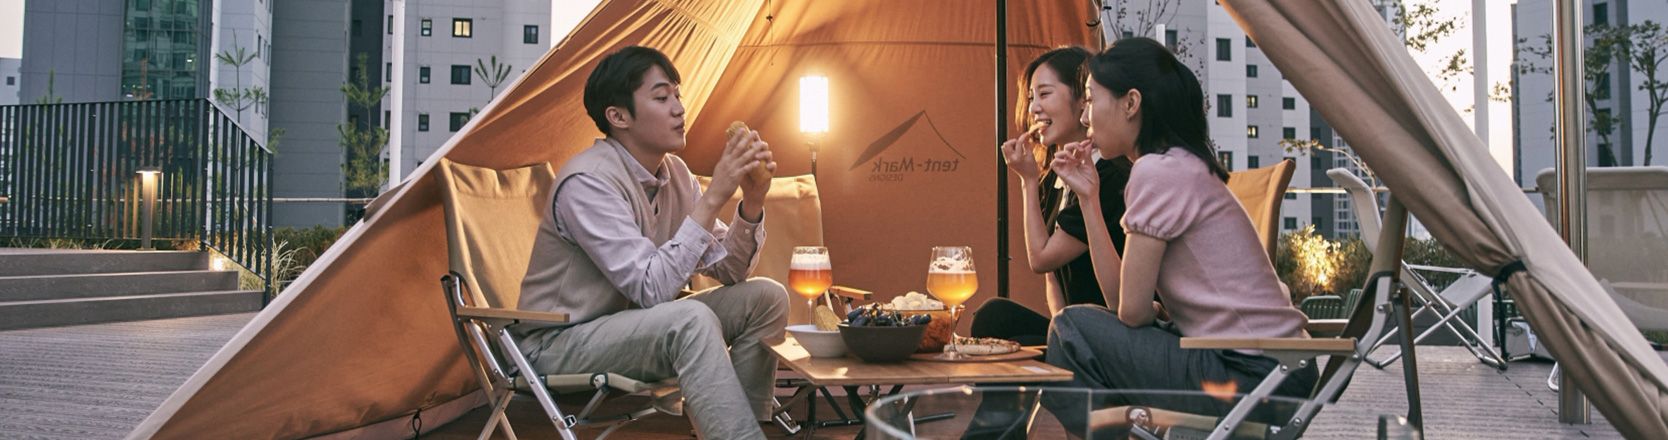 세 사람이 텐트 앞 테이블과 의자에 둘러앉아 음식을 나누어 먹고 있습니다.